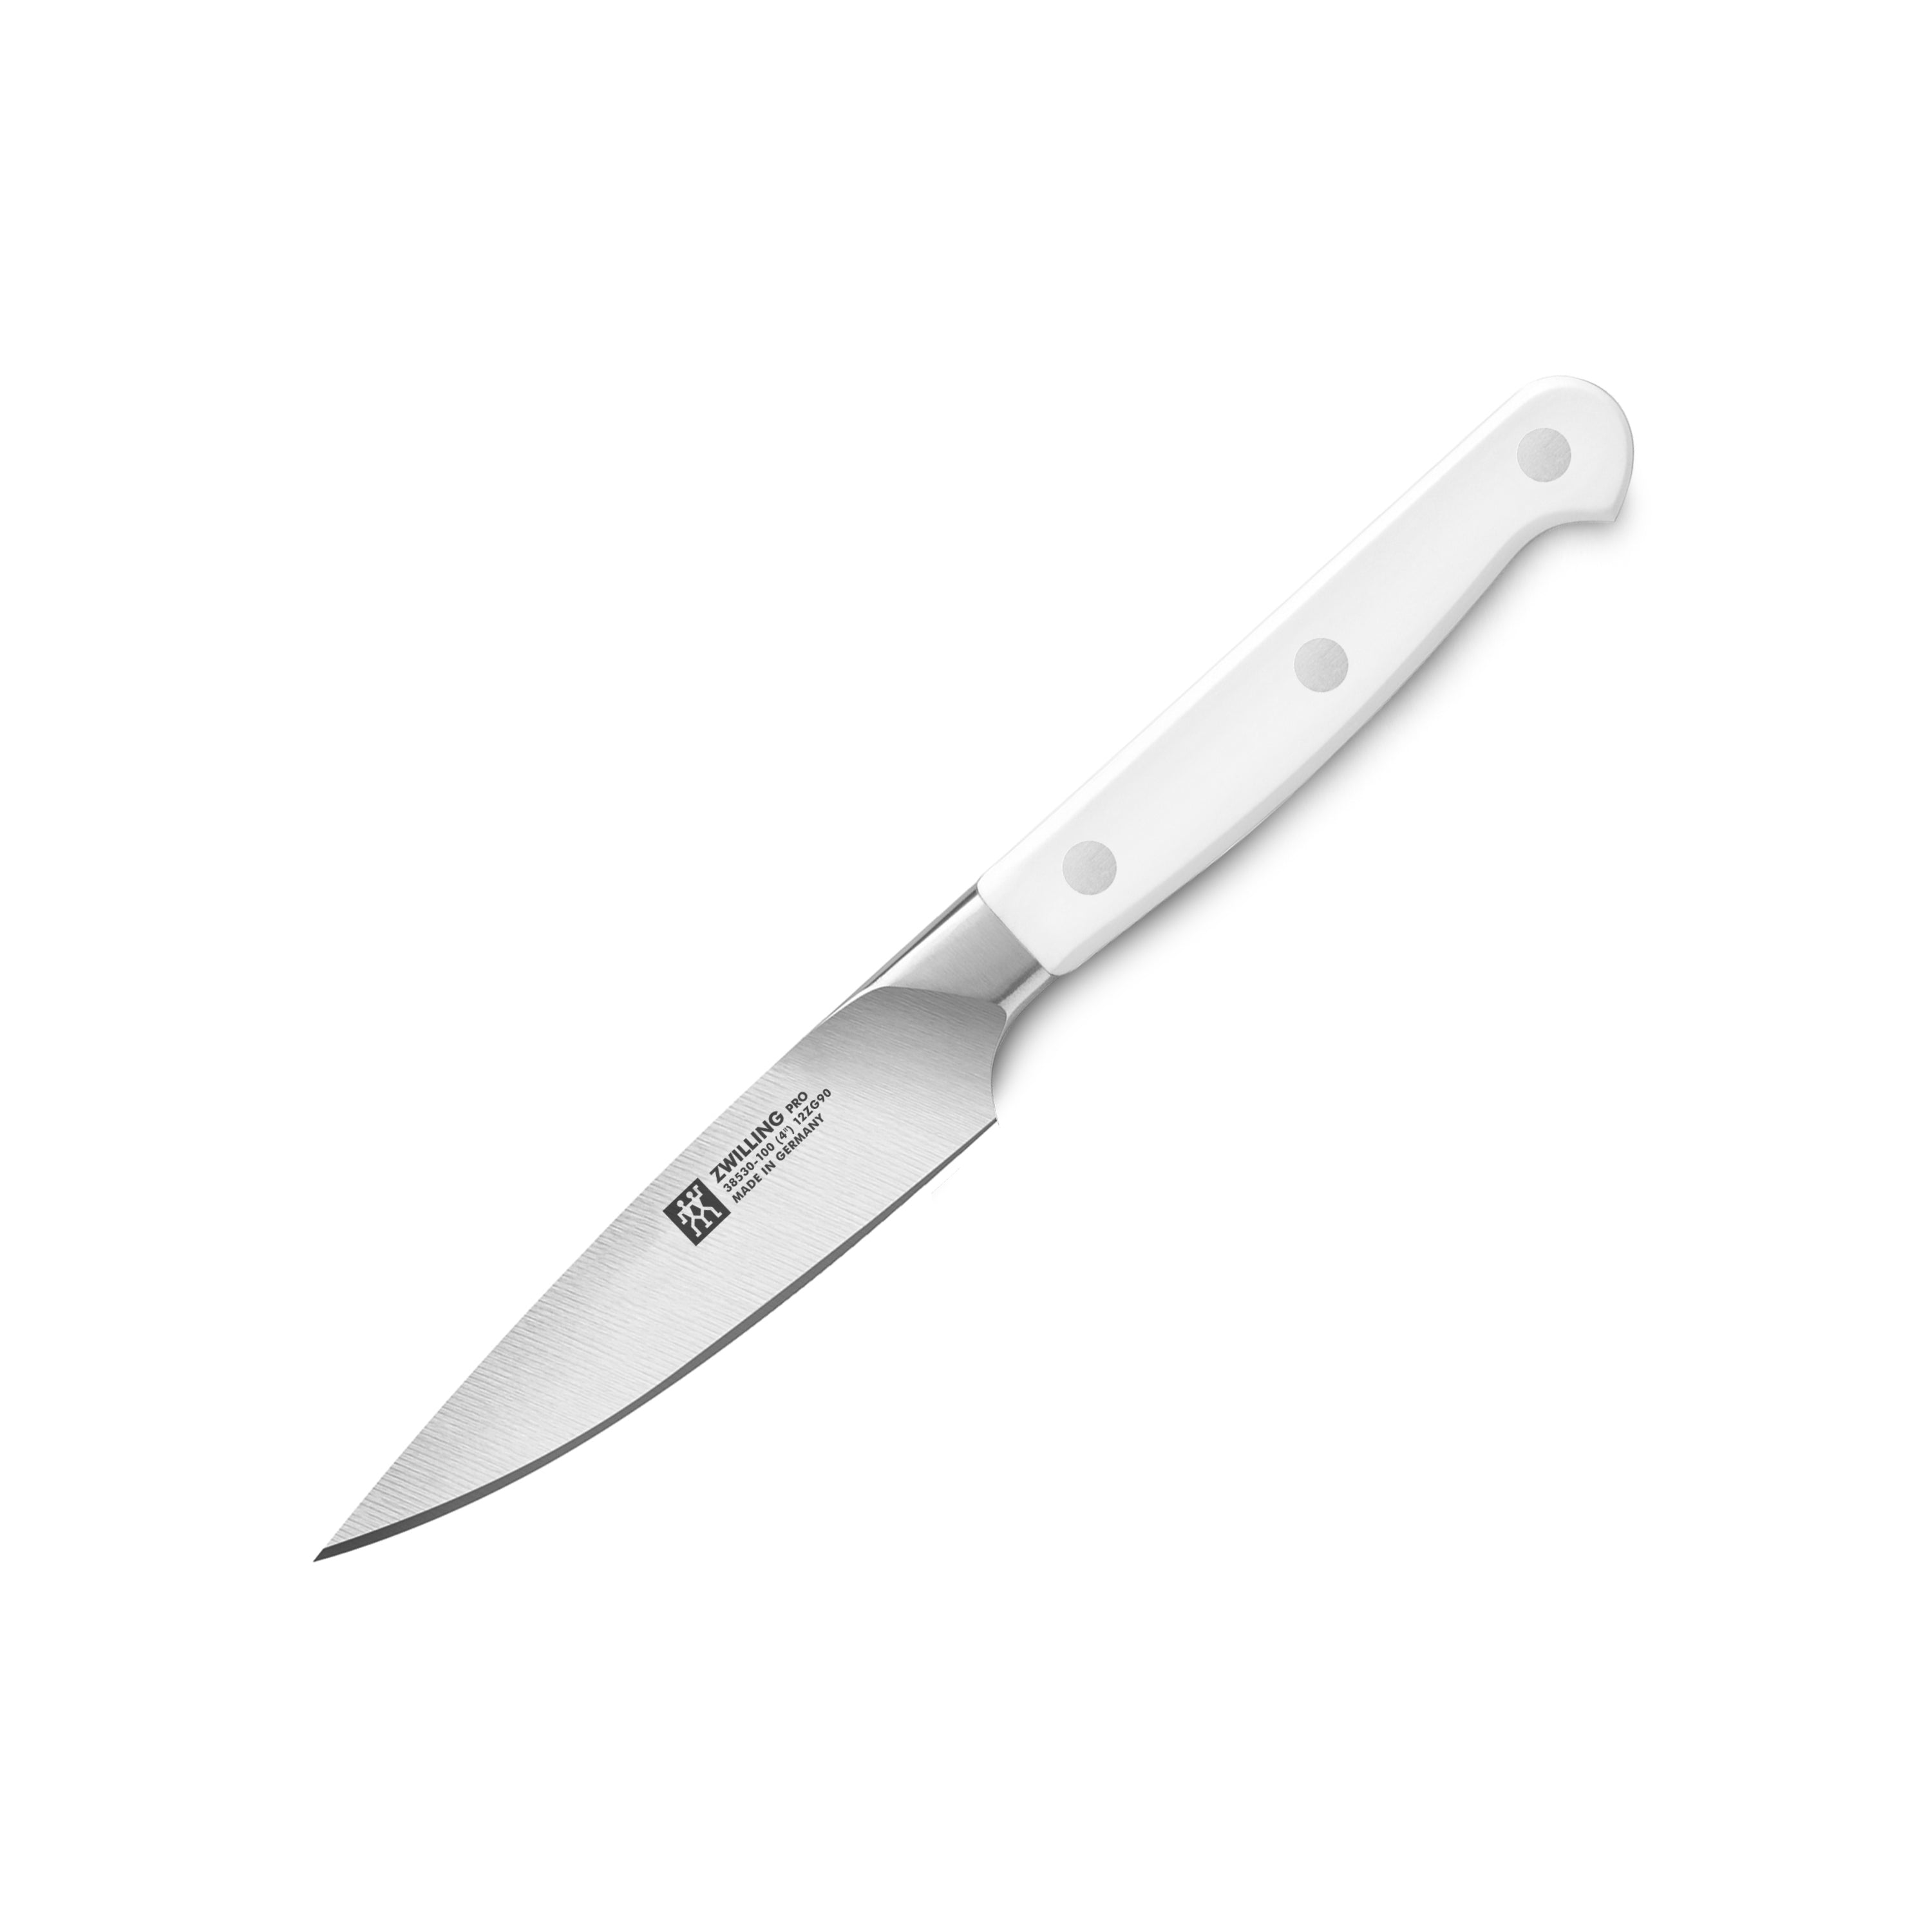 Zwilling Pro Le Blanc Paring Knife, 4